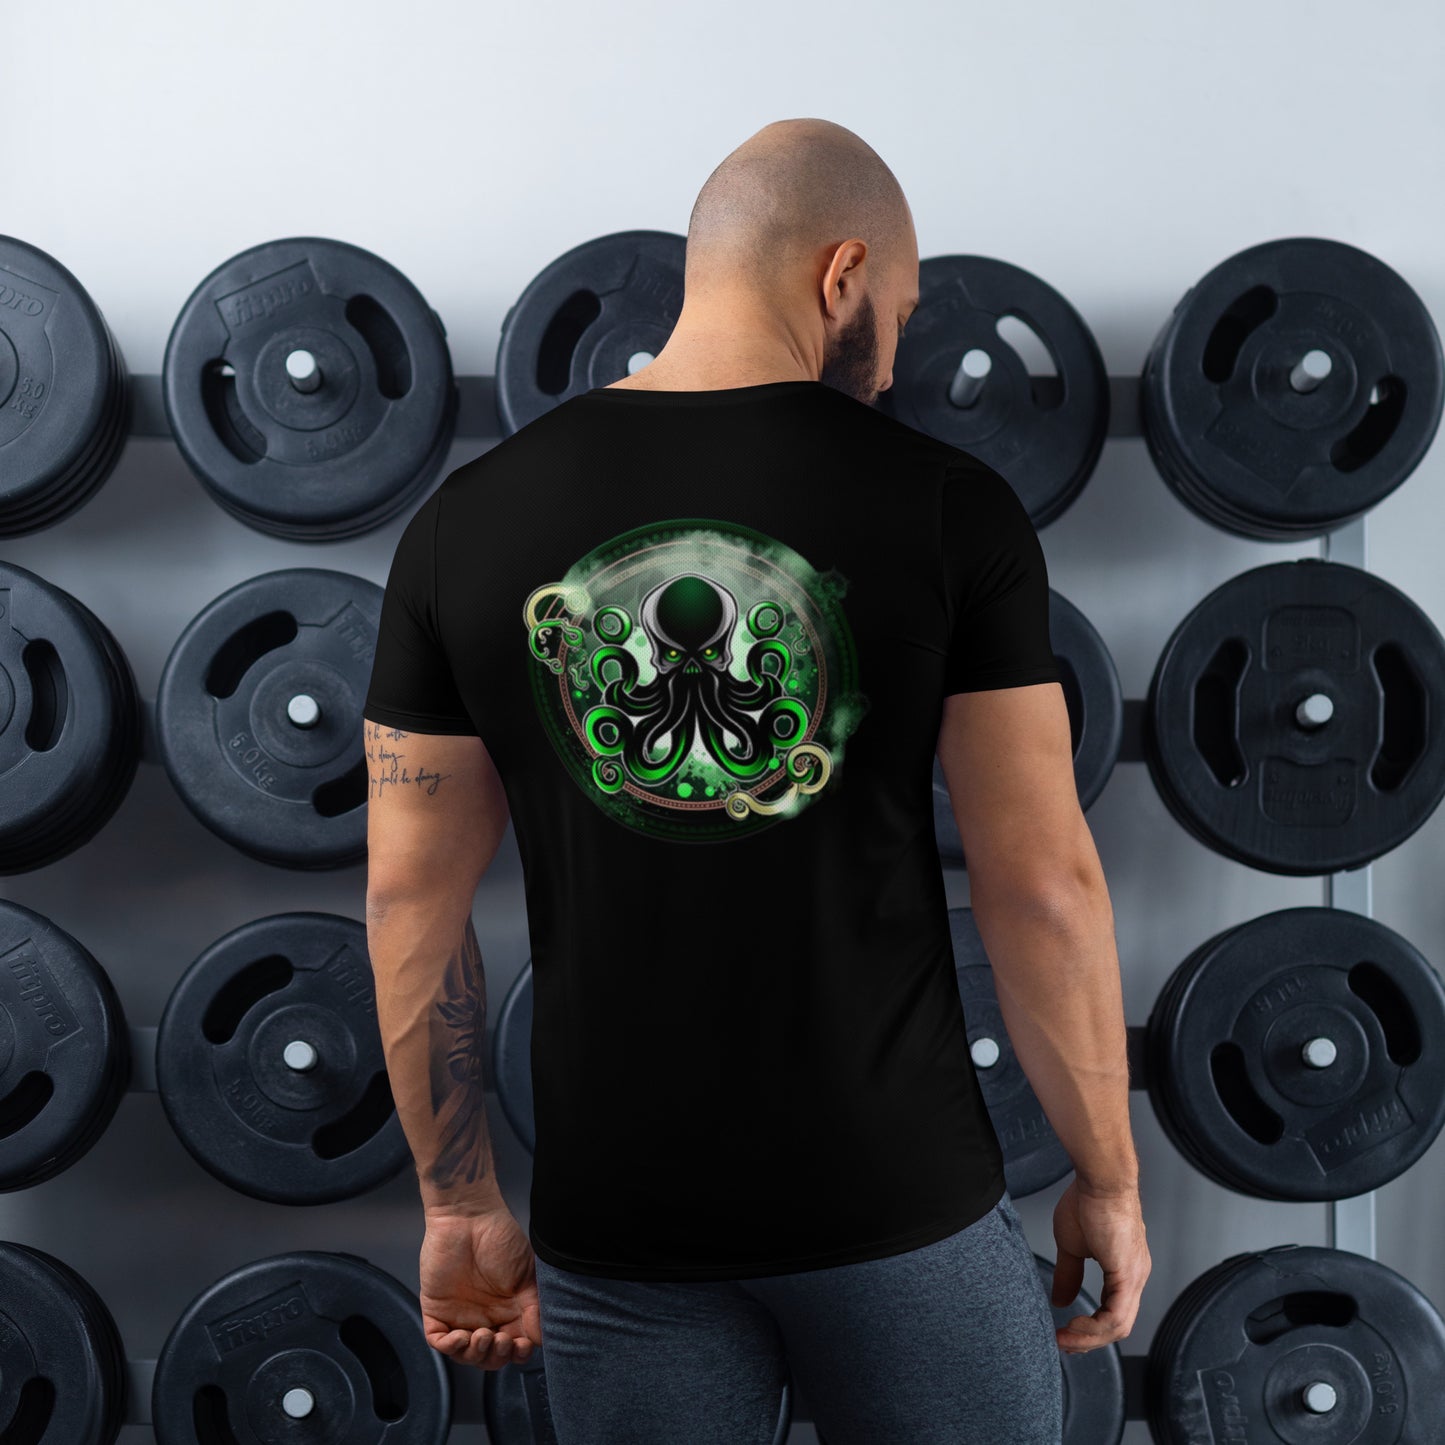 Shadow Squid Athletic T-Shirt